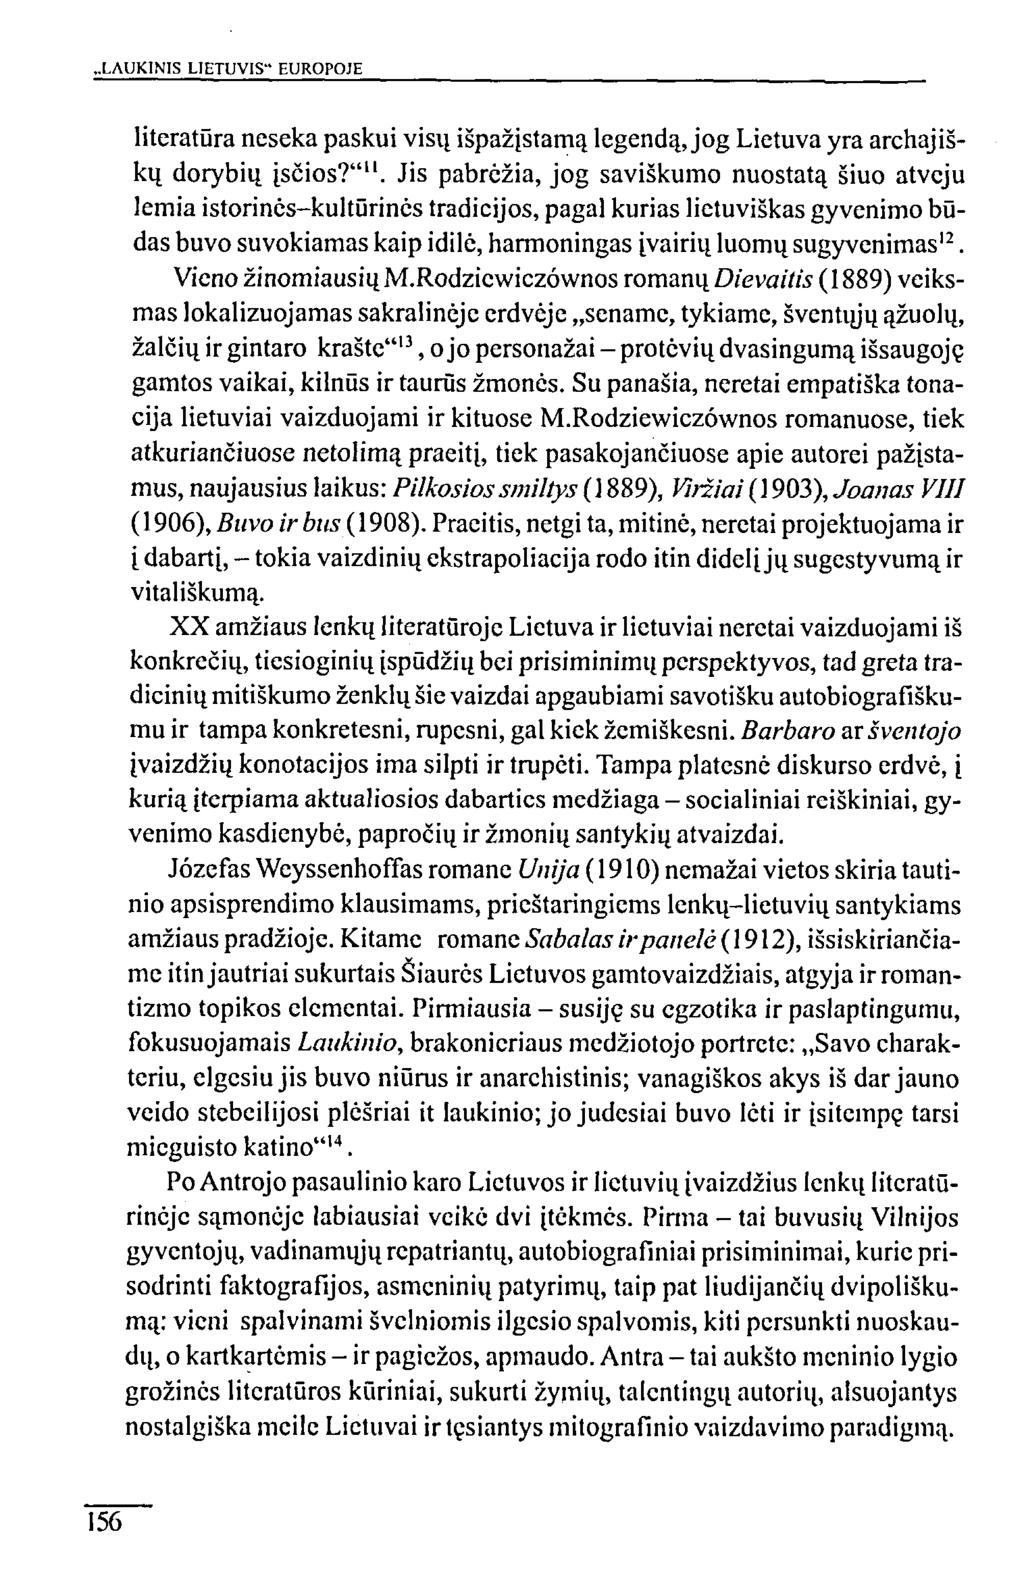 LAUKINIS LIETUVIS" EUROPOJE literatūra neseka paskui visų išpažįstamą legendą, jog Lietuva yra archajiškų dorybių įsčios?"".